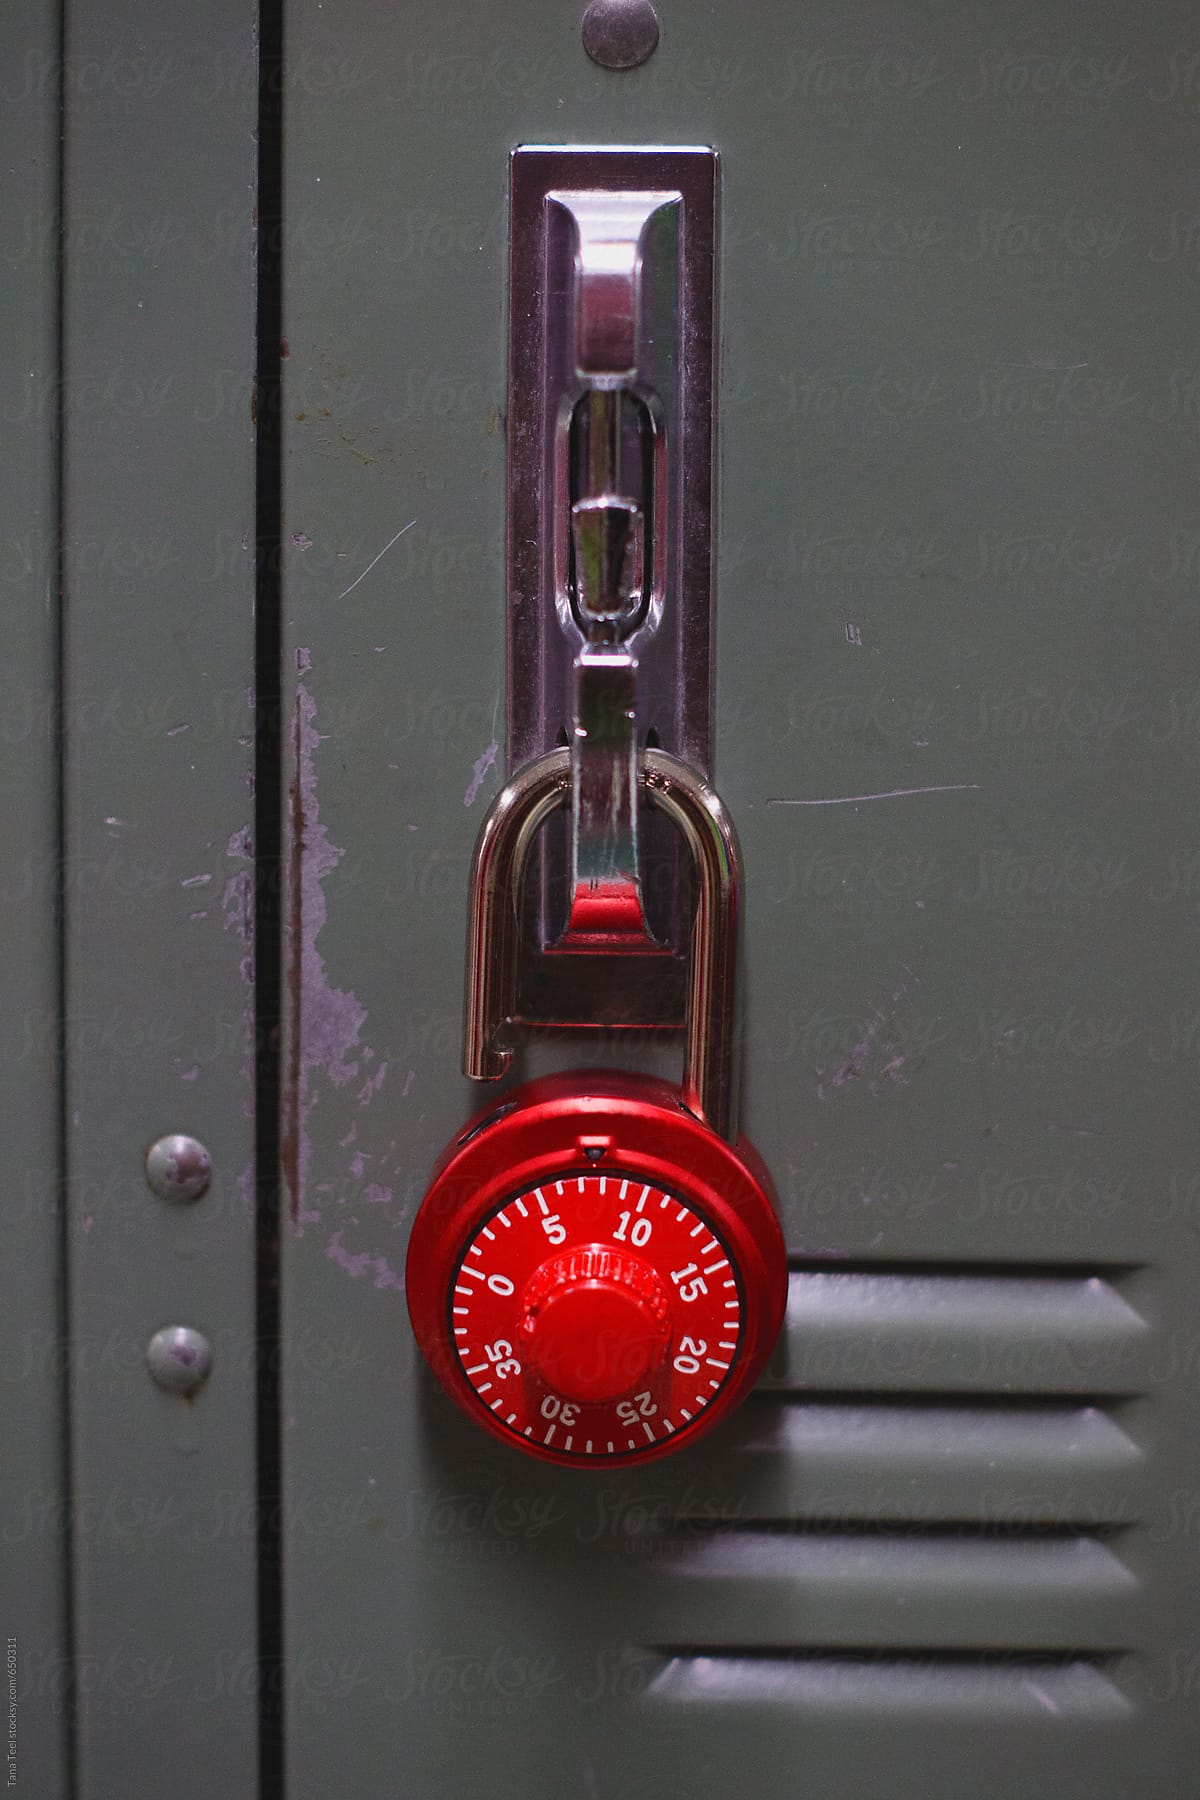 Red lock hangs on locker door handle